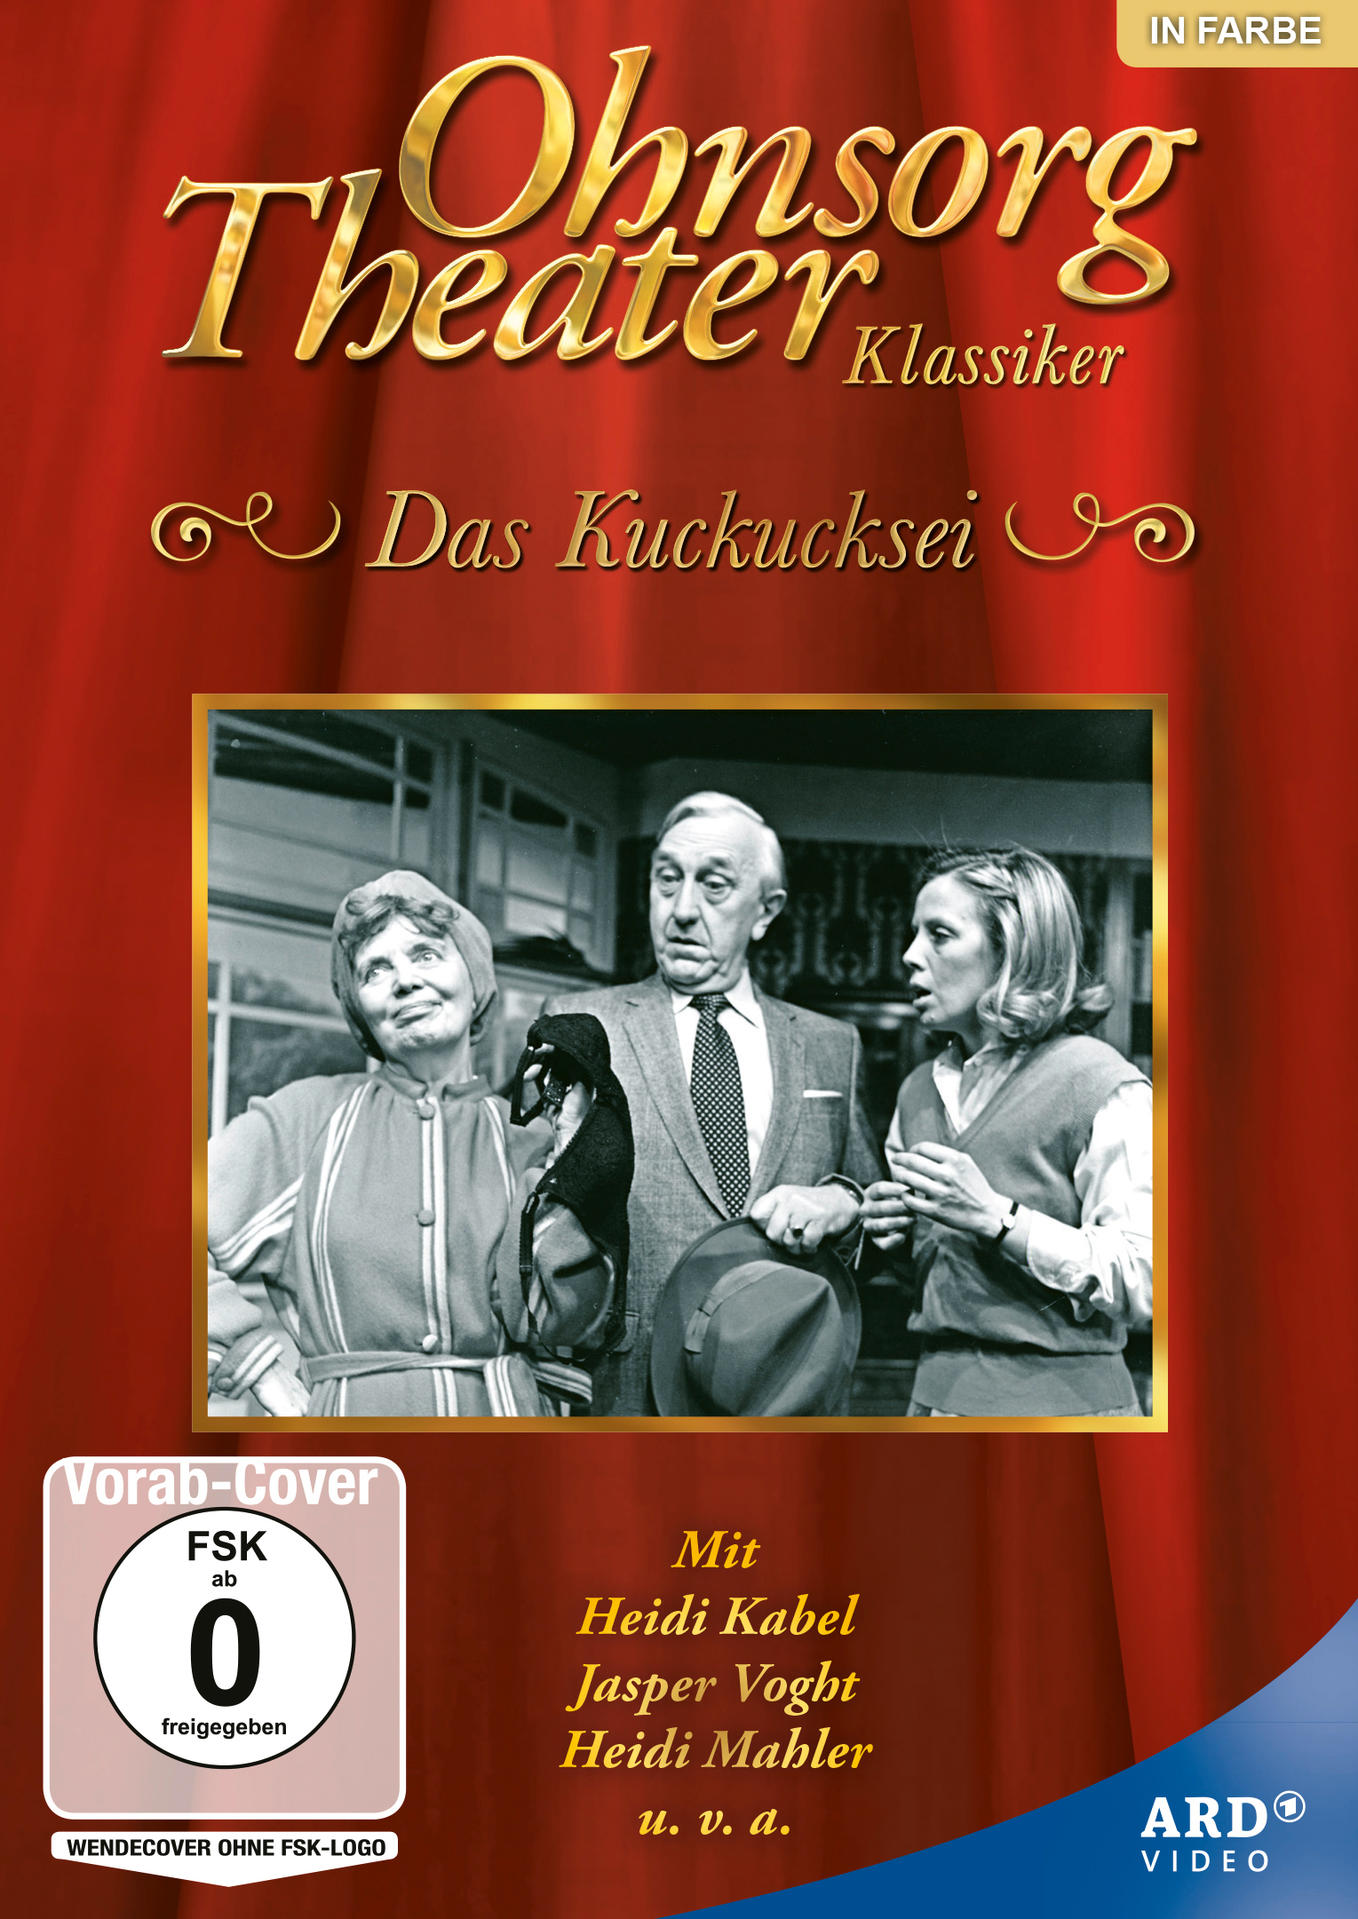 DVD Kuckucksei Klassiker: Ohnsorg-Theater Das